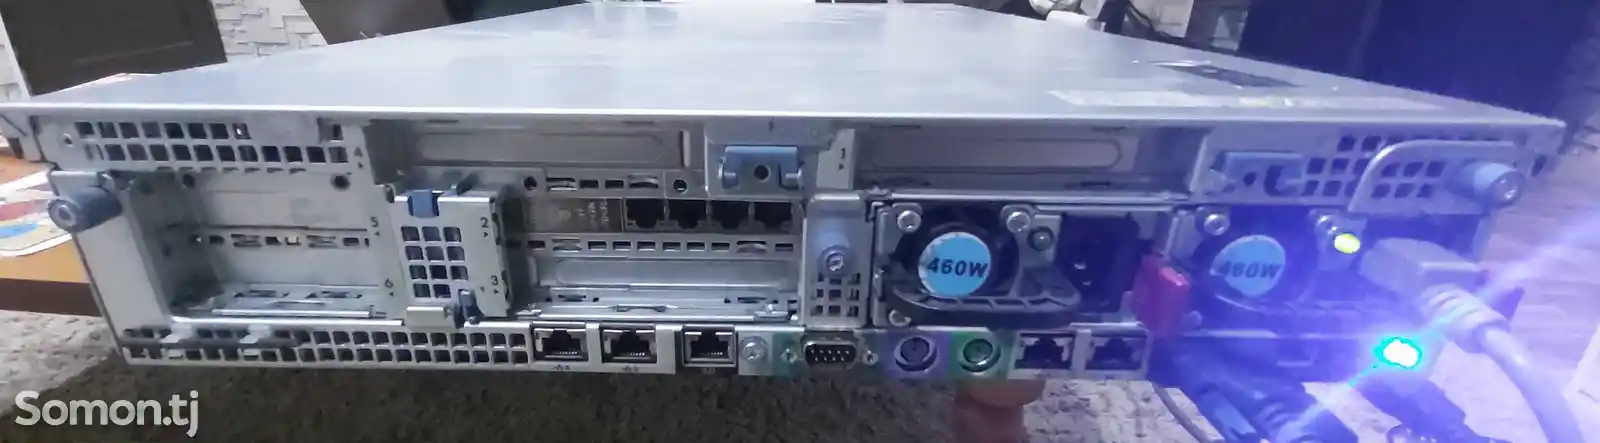 Сервер HP-5